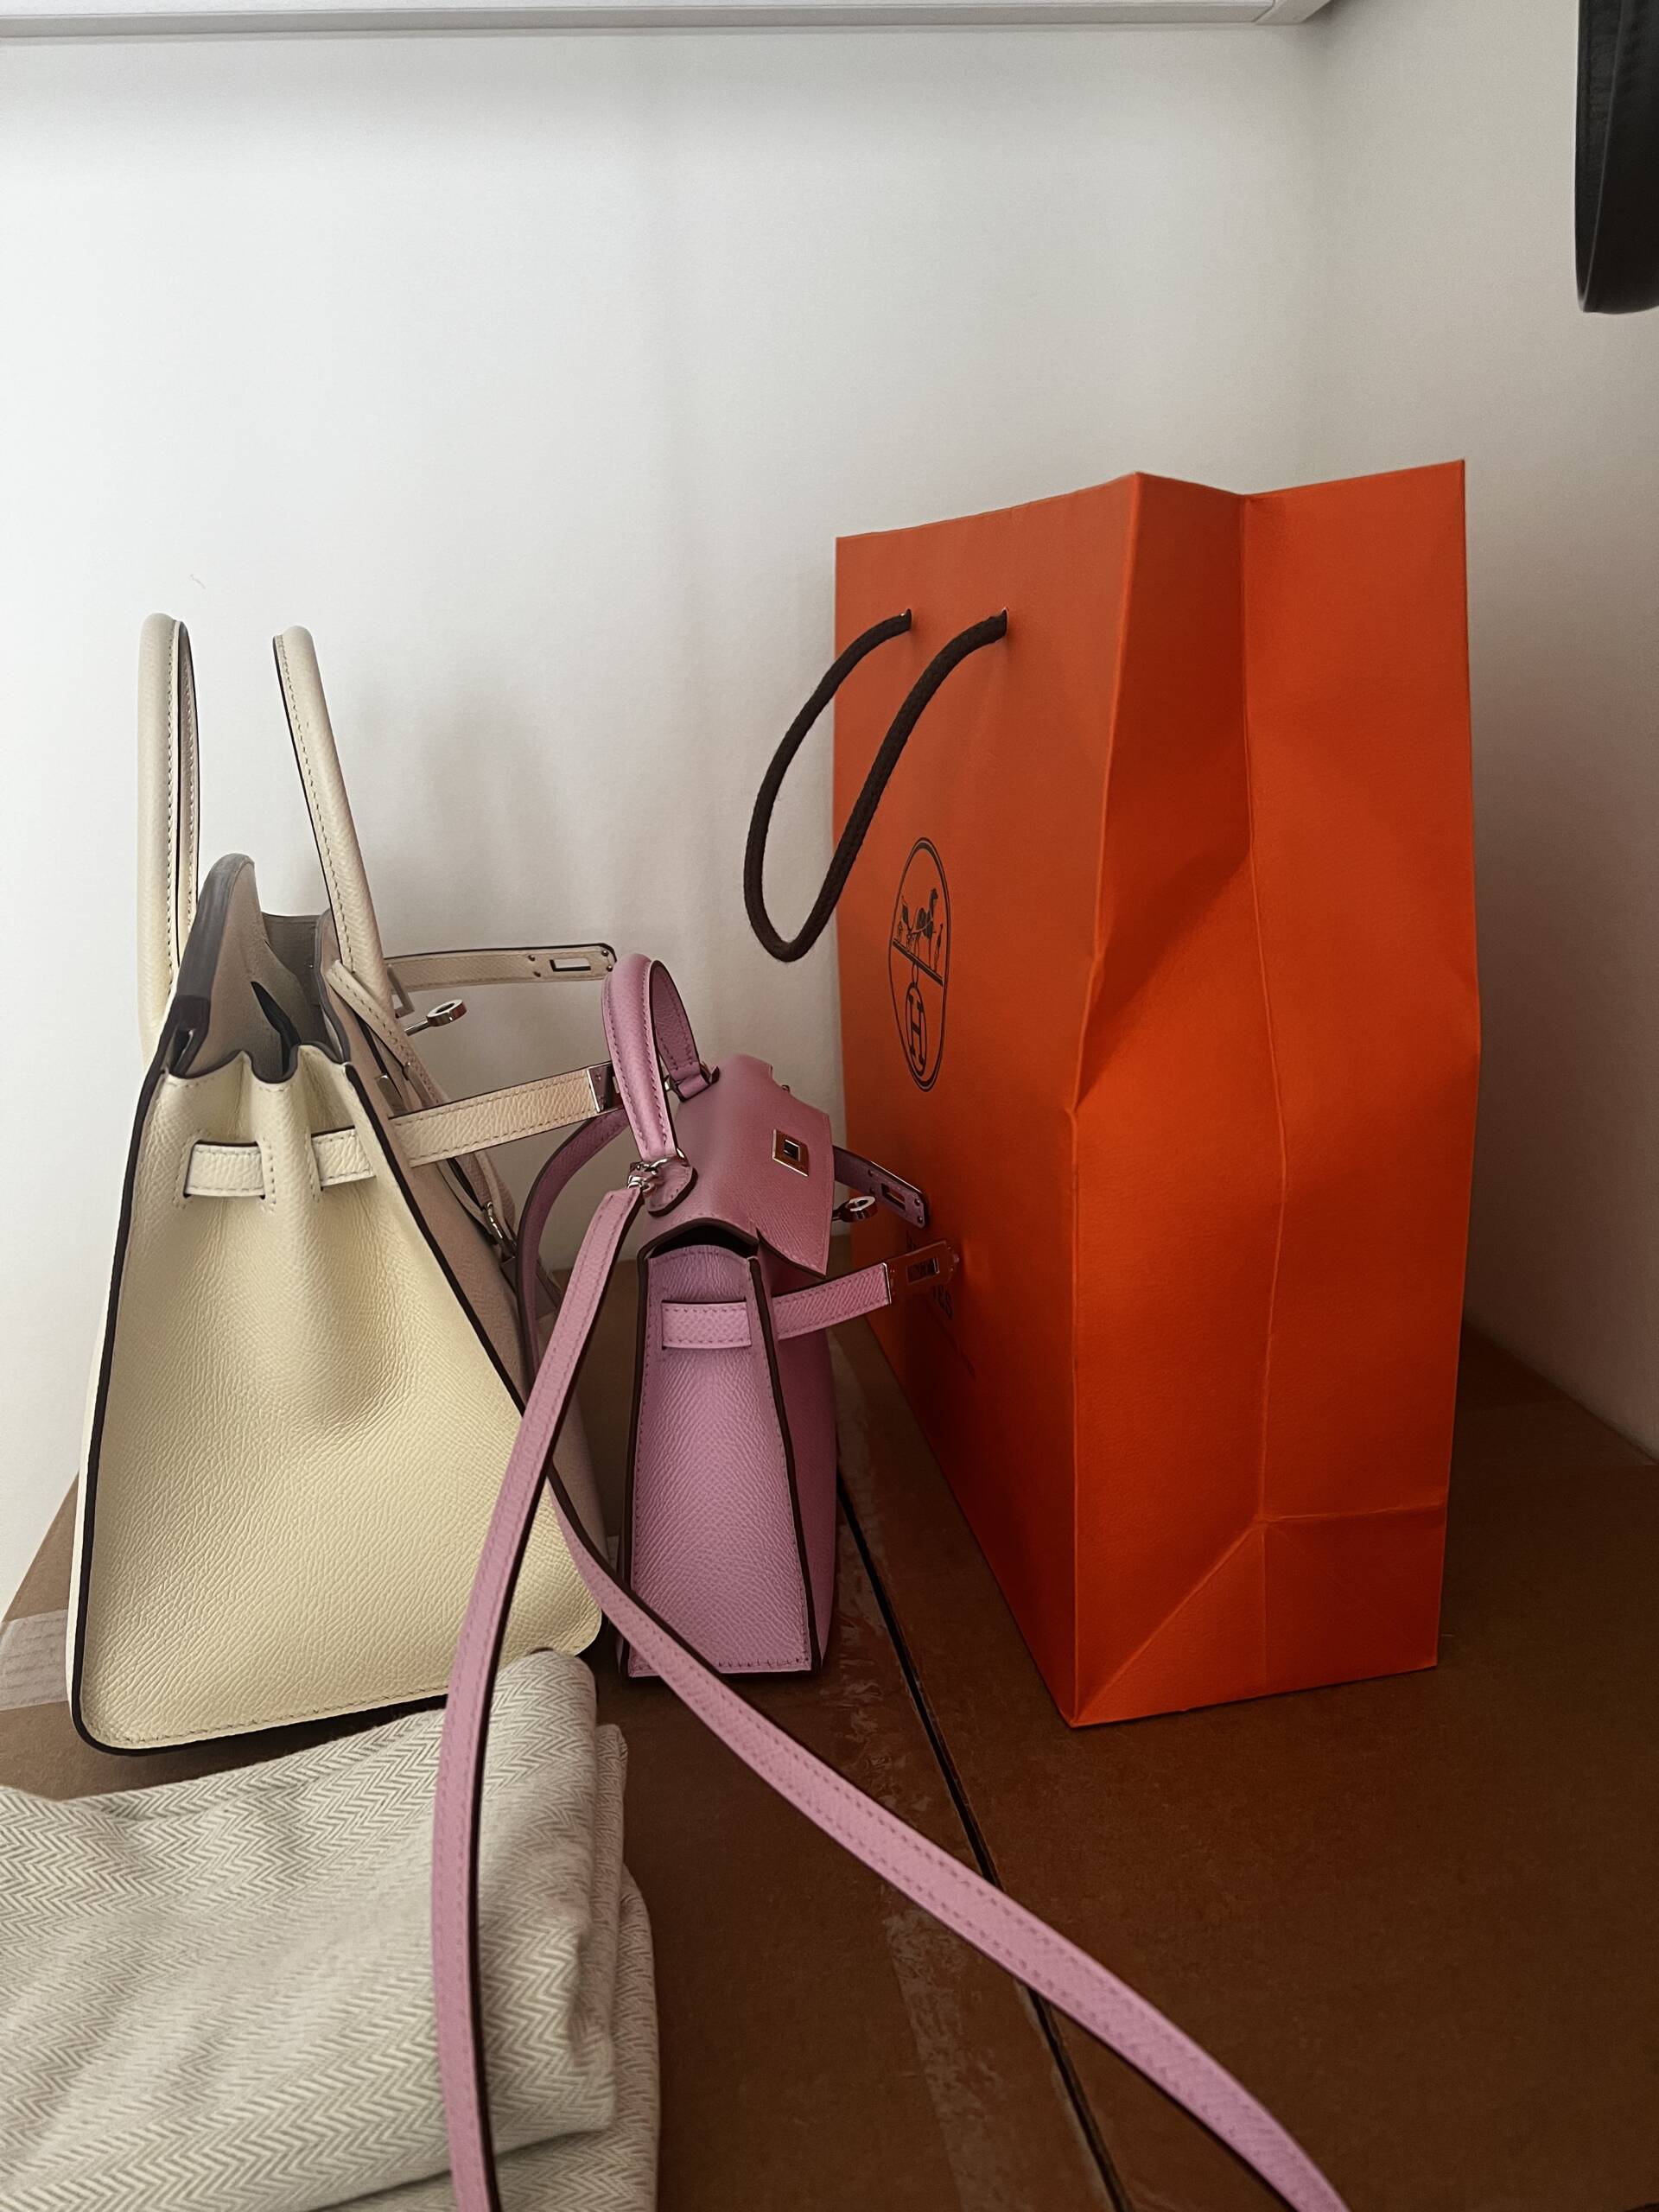 Fake Hermes Kelly Pochette Handmade Bag In Vert Bosphore Shiny